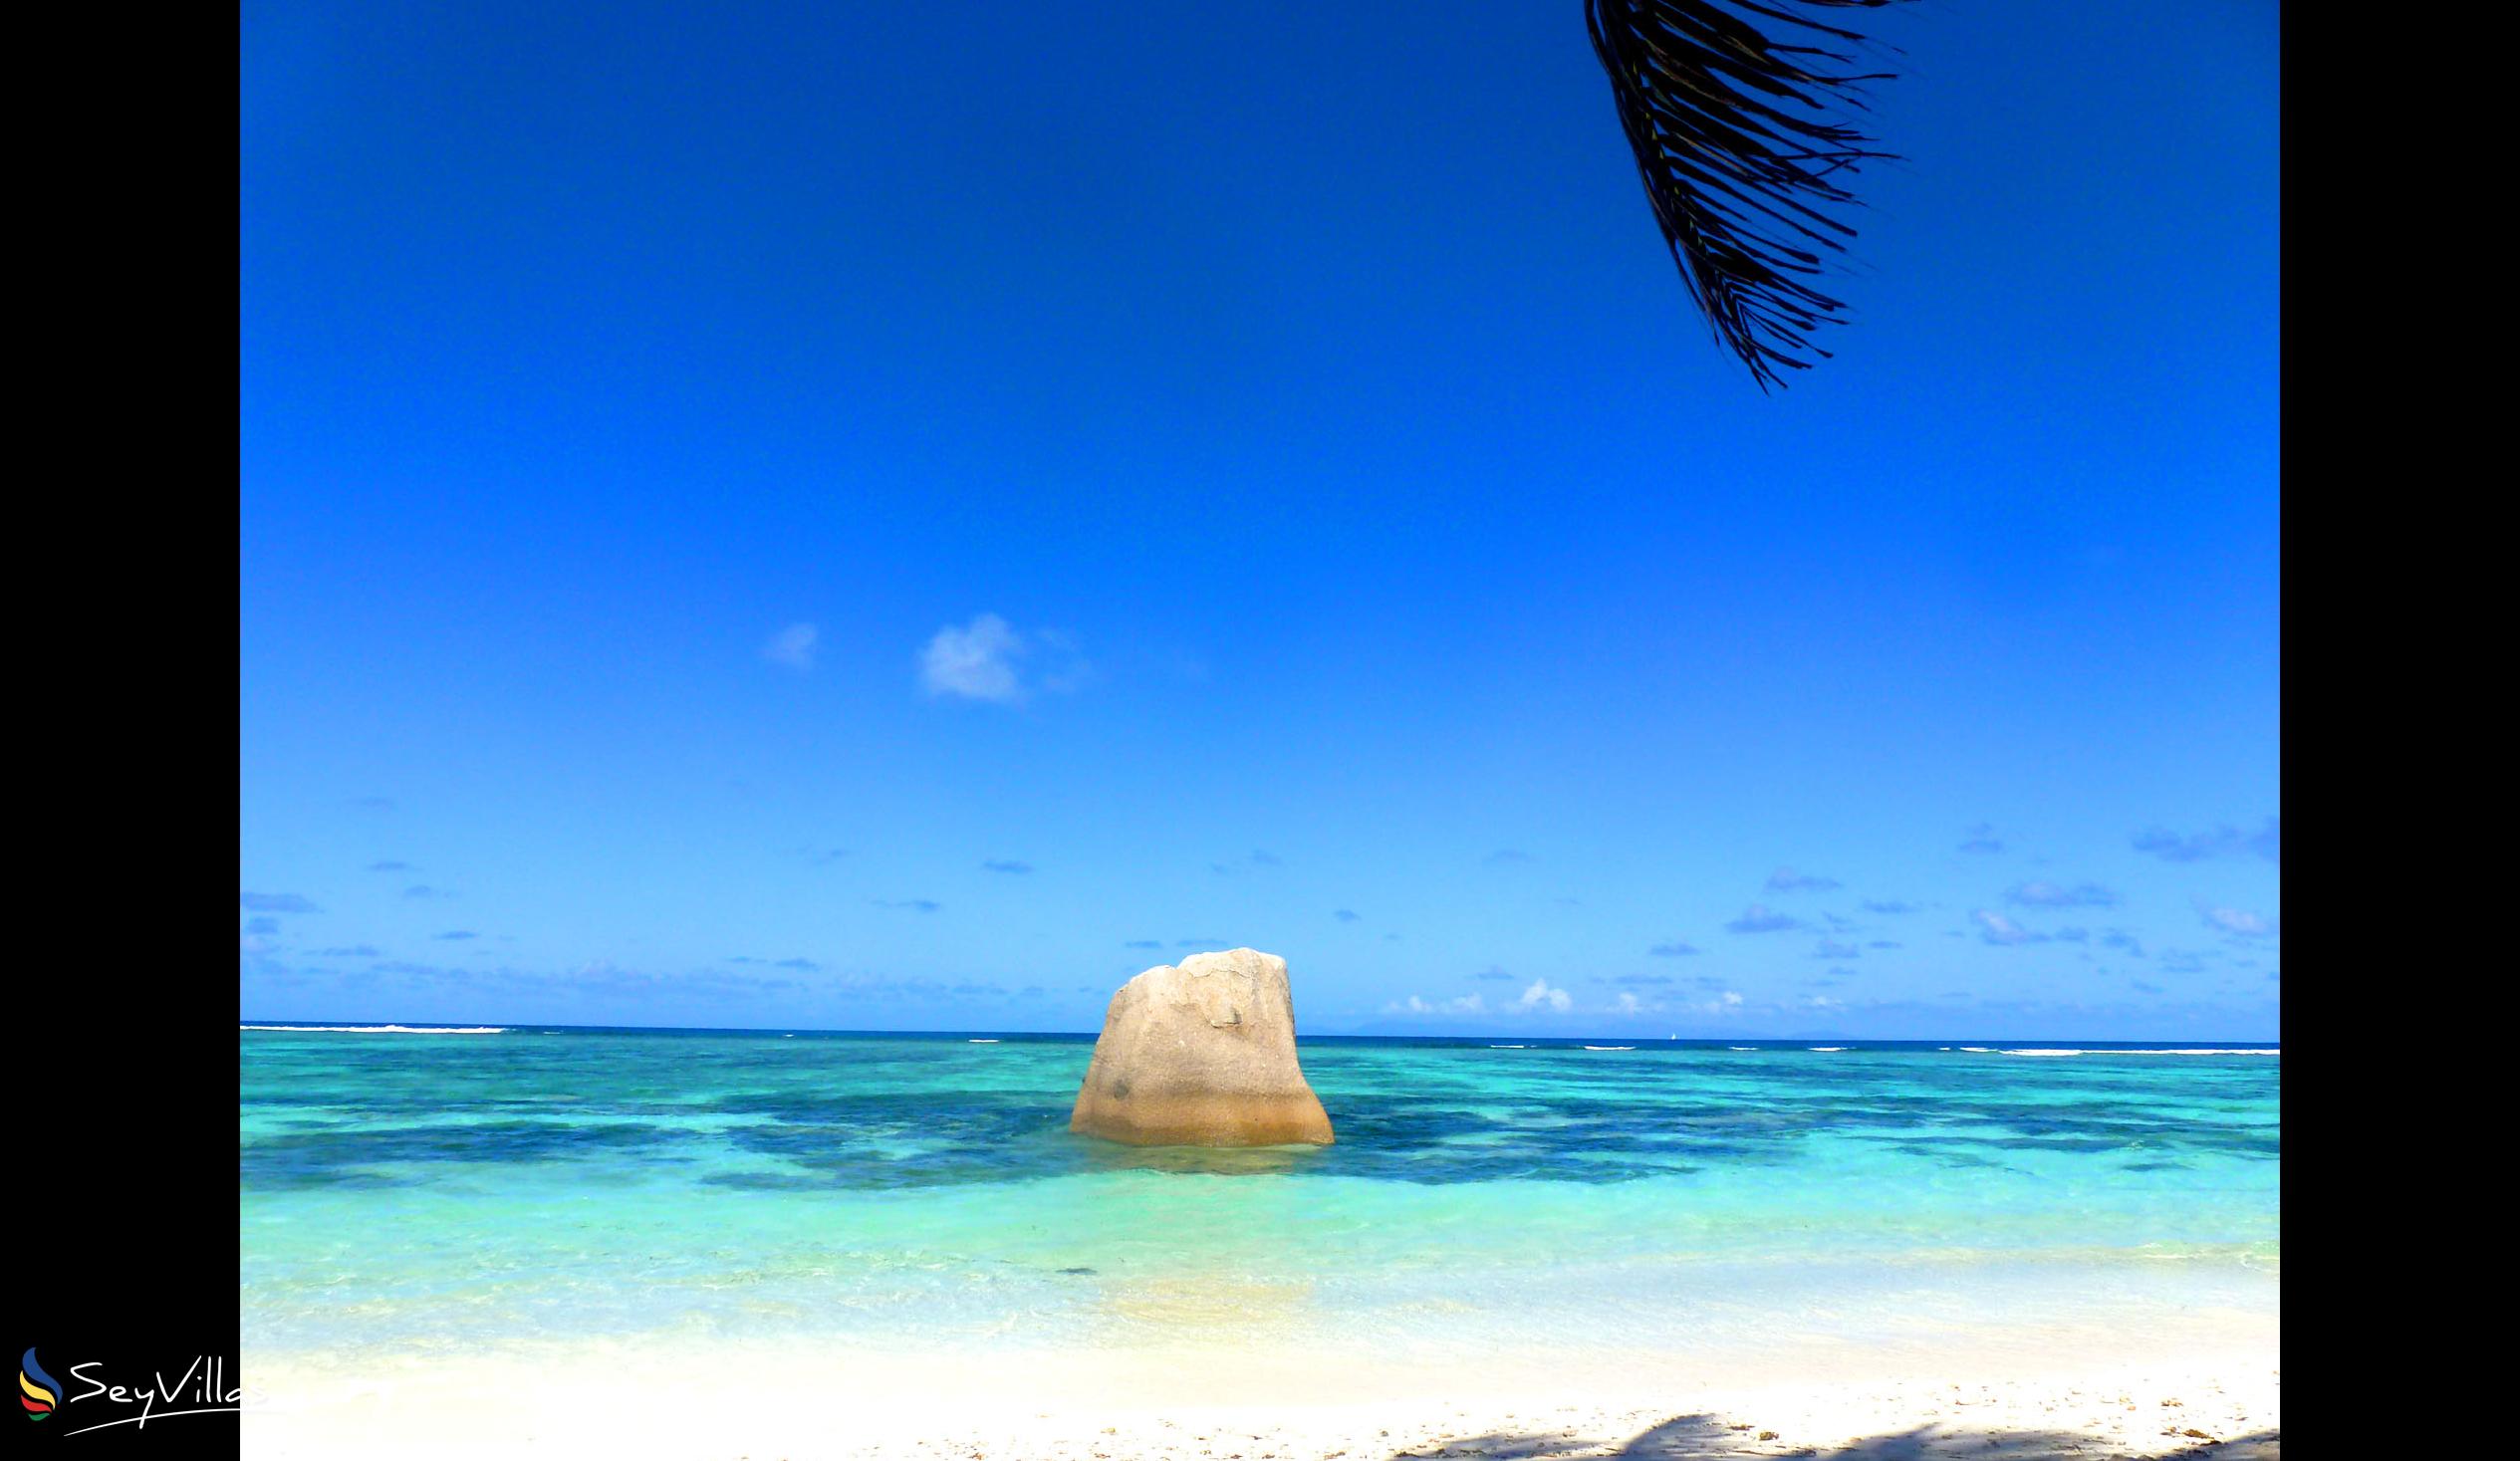 Foto 31: Le Relax Beach House - Spiagge - La Digue (Seychelles)